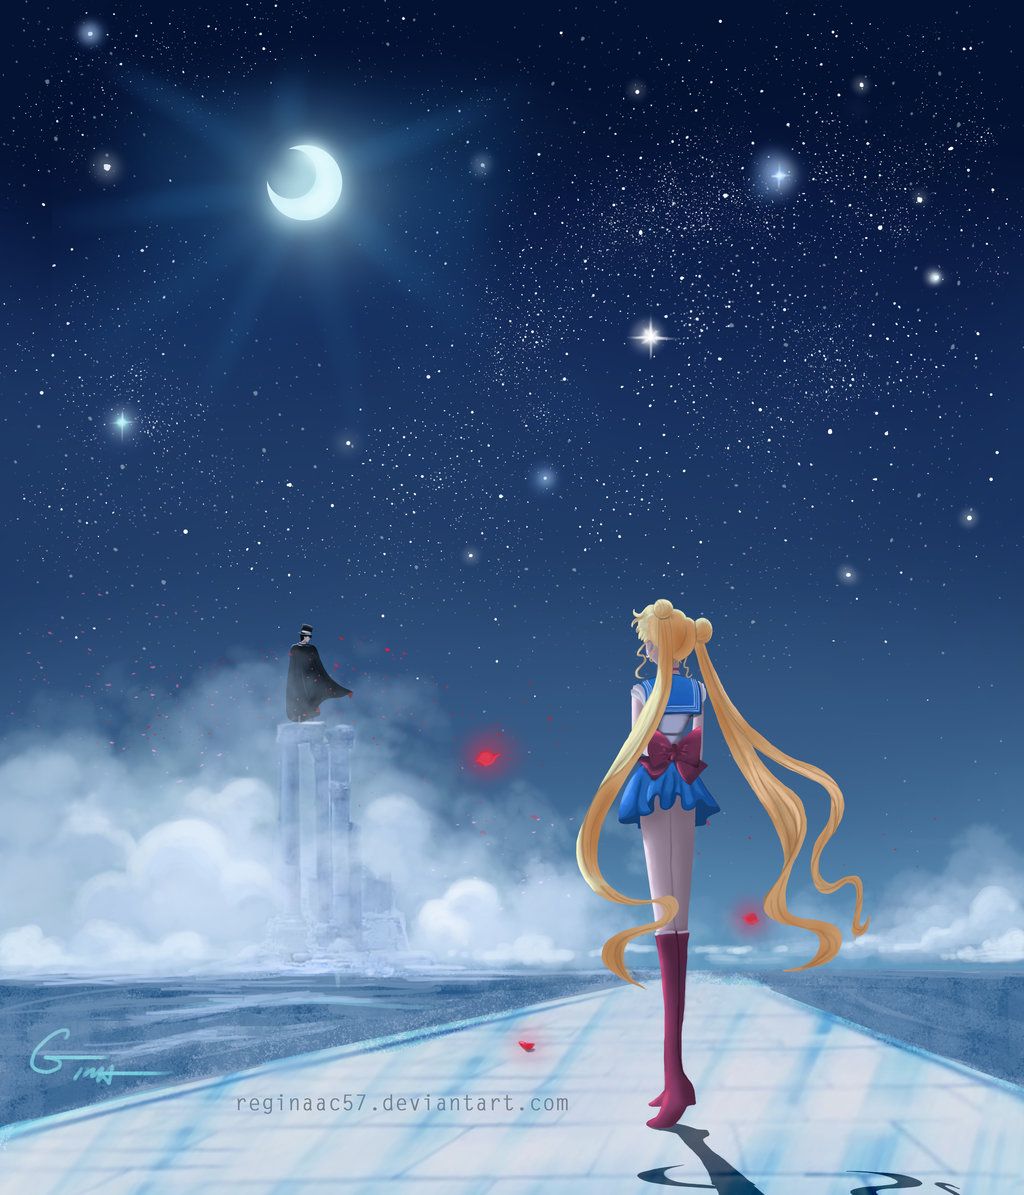 Sailor Moon - Gazing after Tuxedo Mask by reginaac57 on DeviantArt